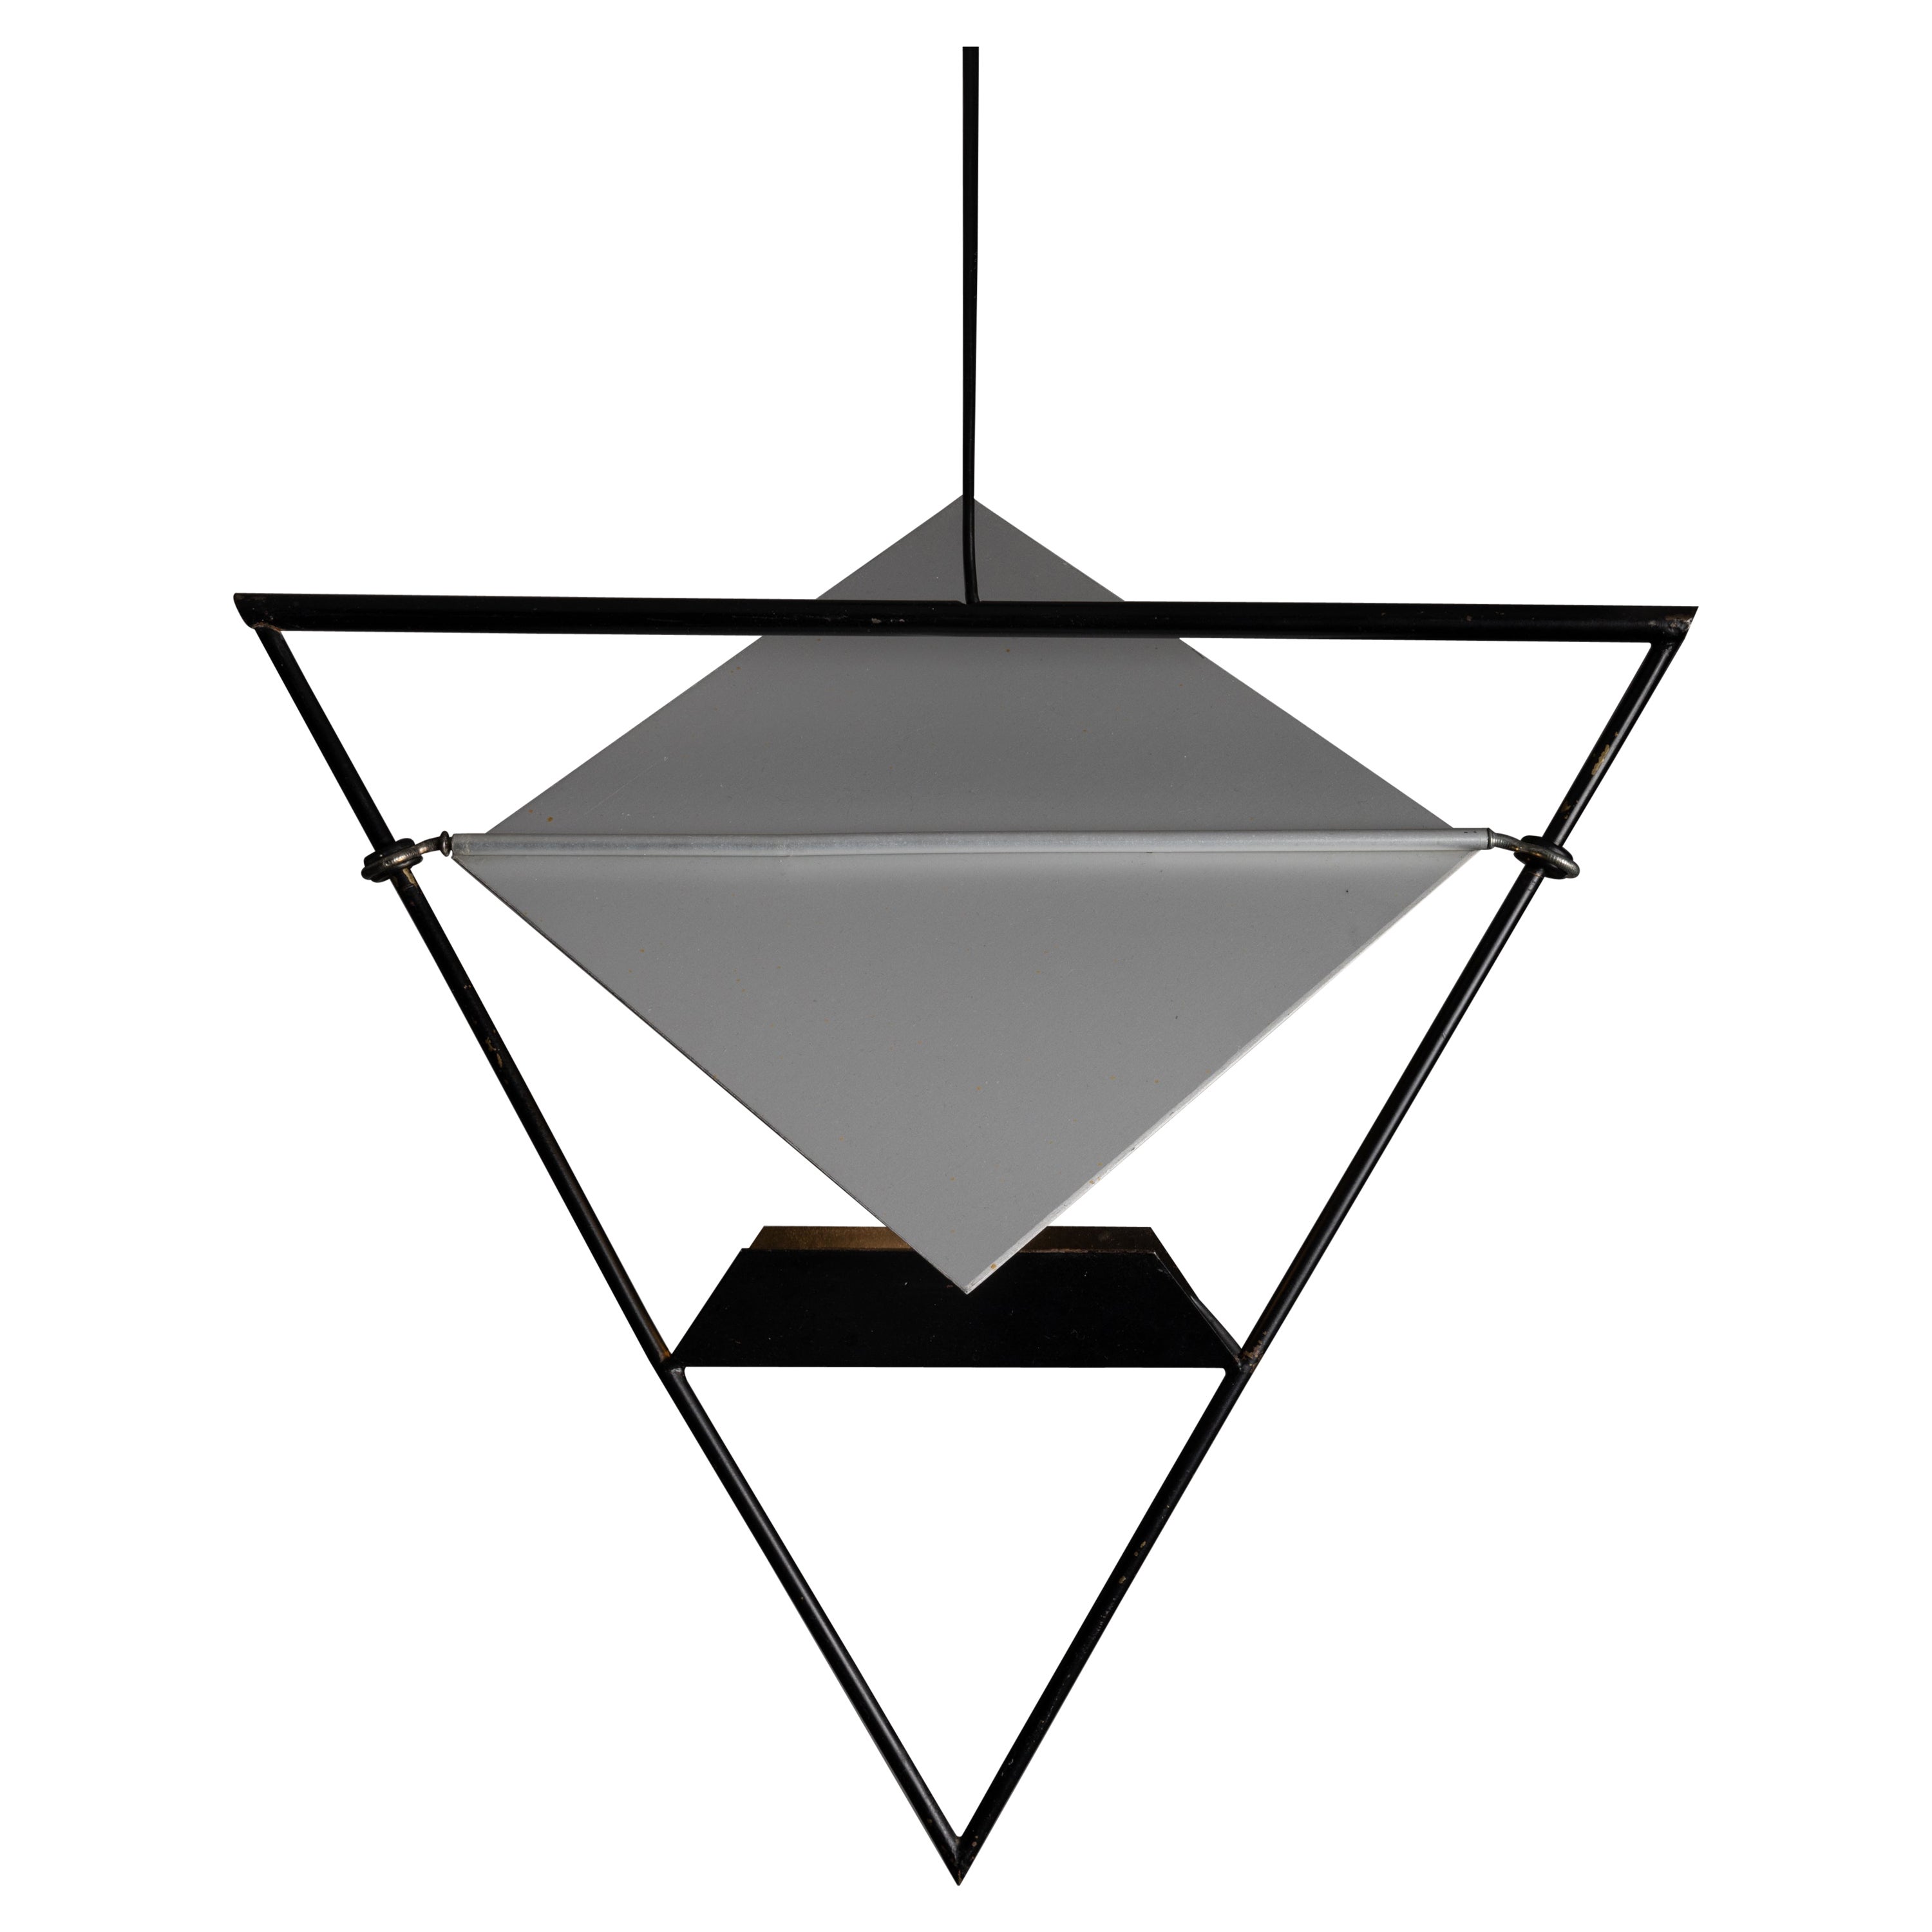 Pendentifs de Mario Botta pour Artemide. Conçu et fabriqué en Italie, vers 1980. Pendentifs uniques, monochromatiques et géométriques qui présentent une teinte plate anatomique et cinétique. Le cadre est en acier émaillé et est très léger. Chaque